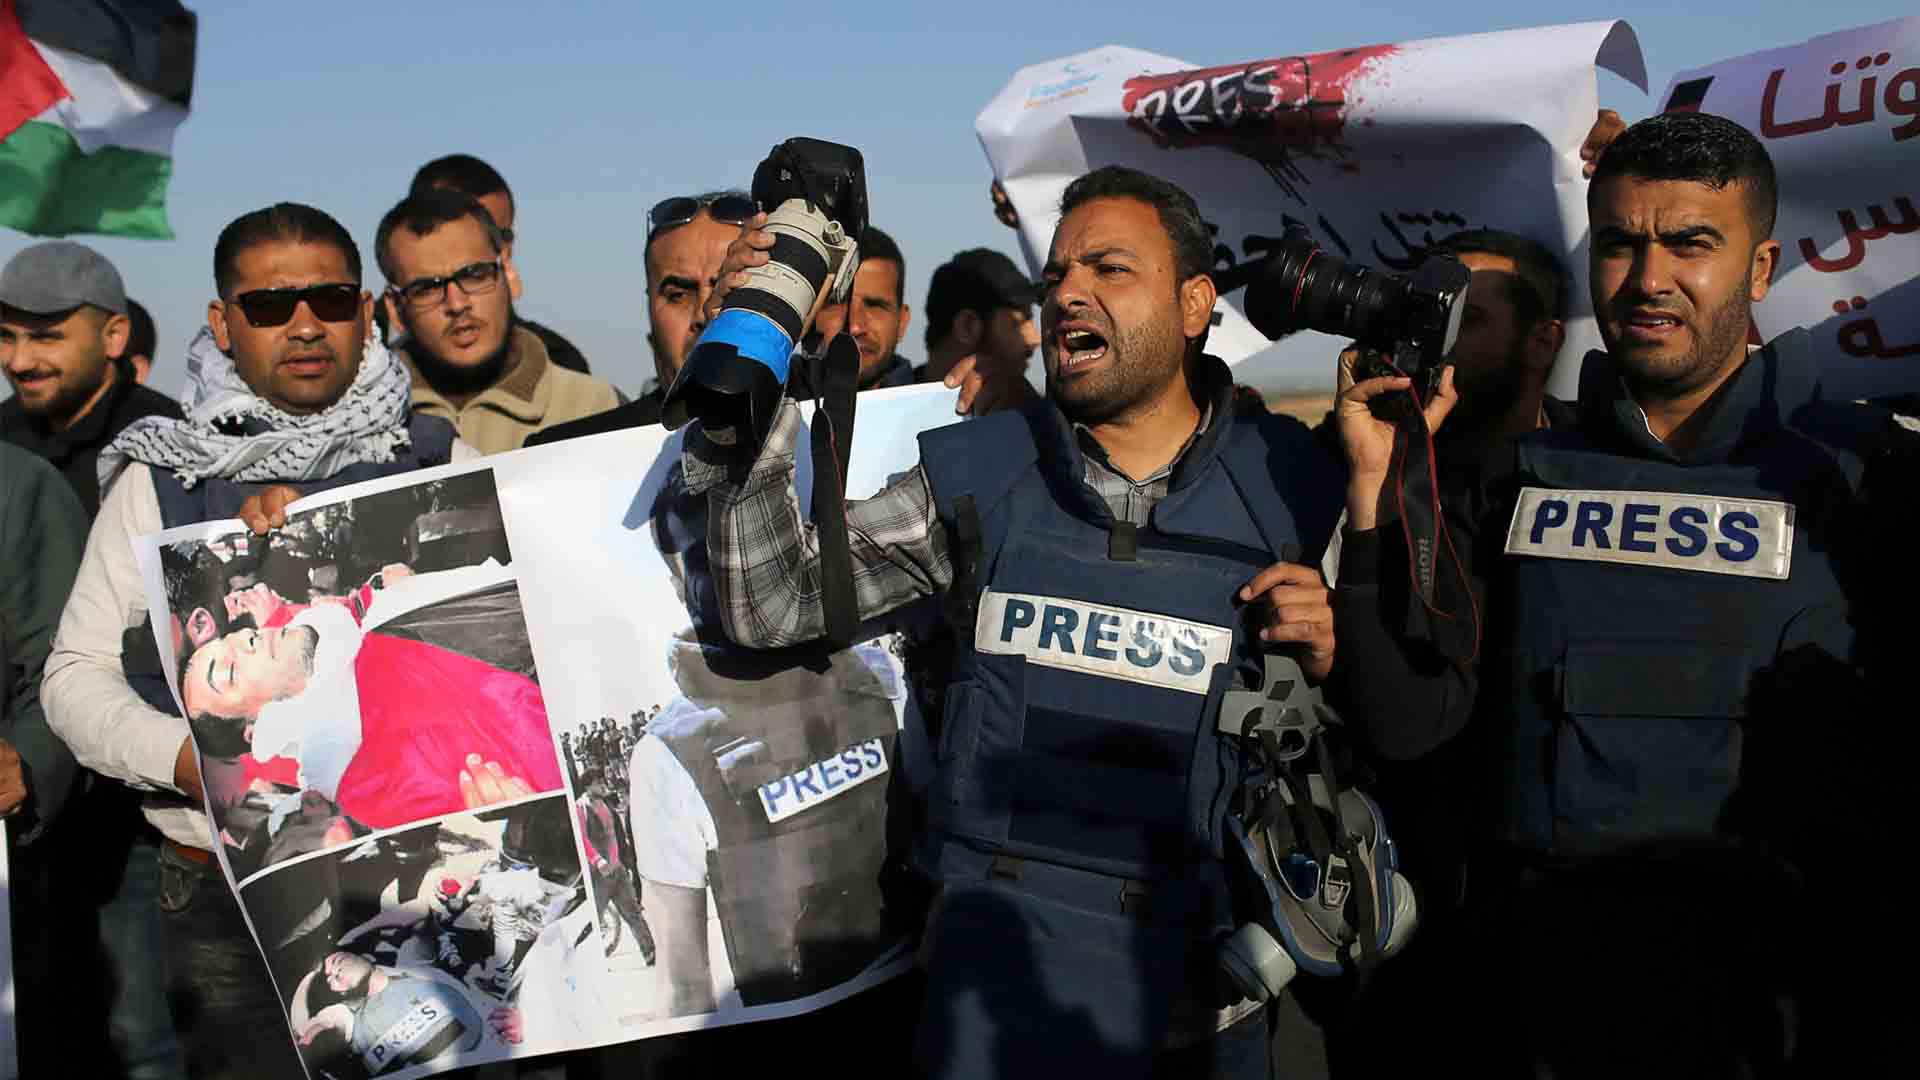 La Asociación de Medios de Información insta a preservar la seguridad de los periodistas